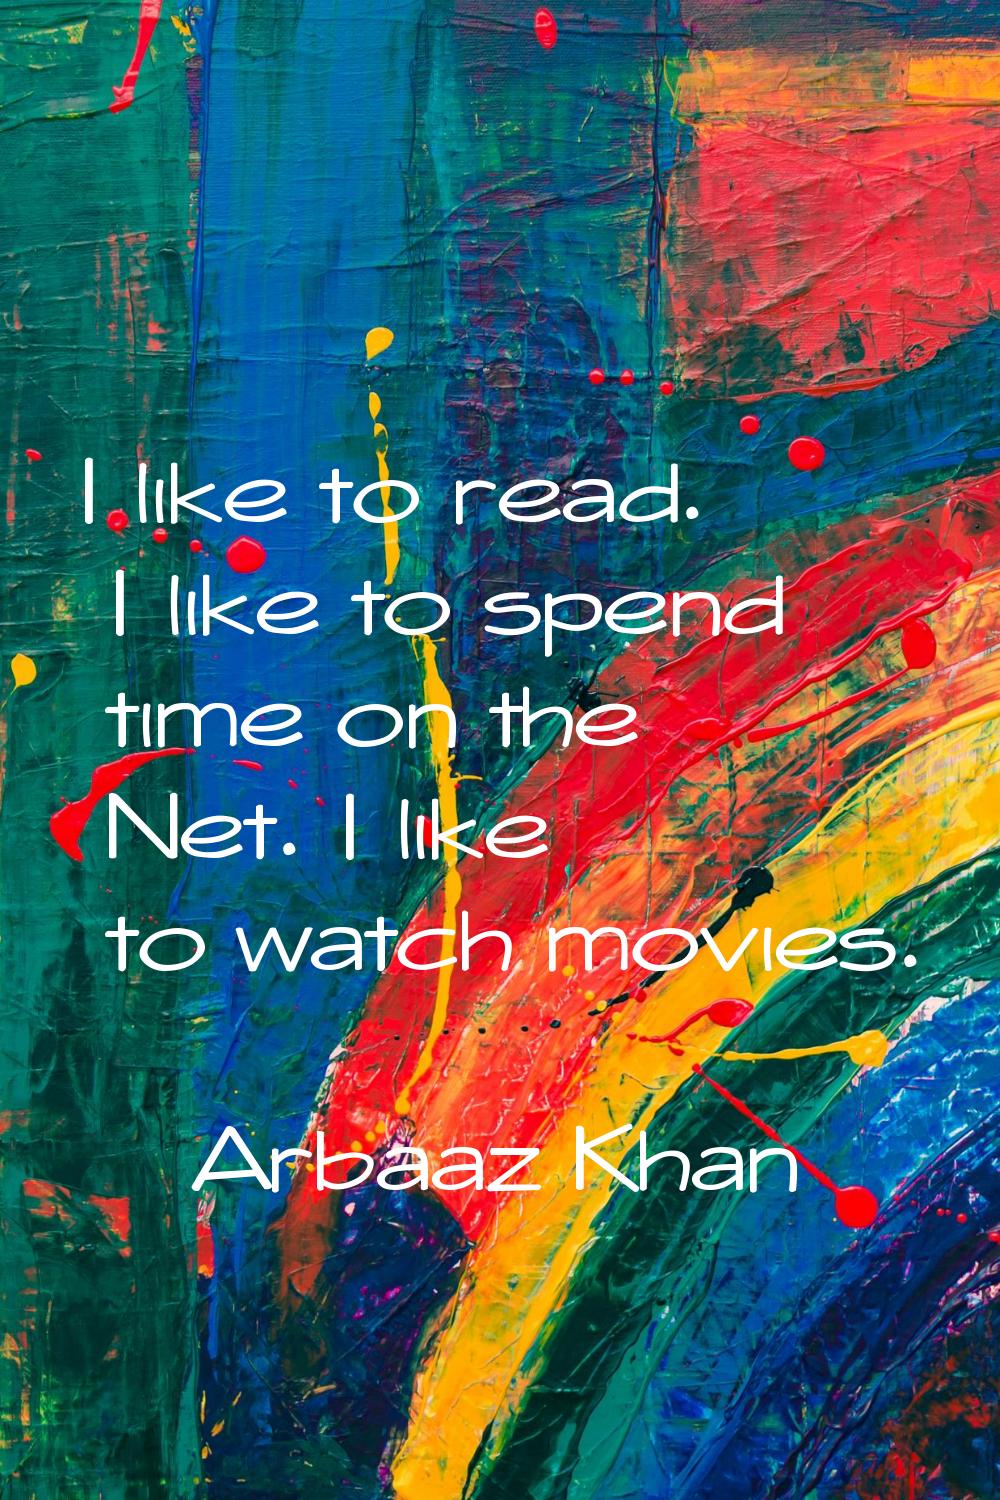 I like to read. I like to spend time on the Net. I like to watch movies.